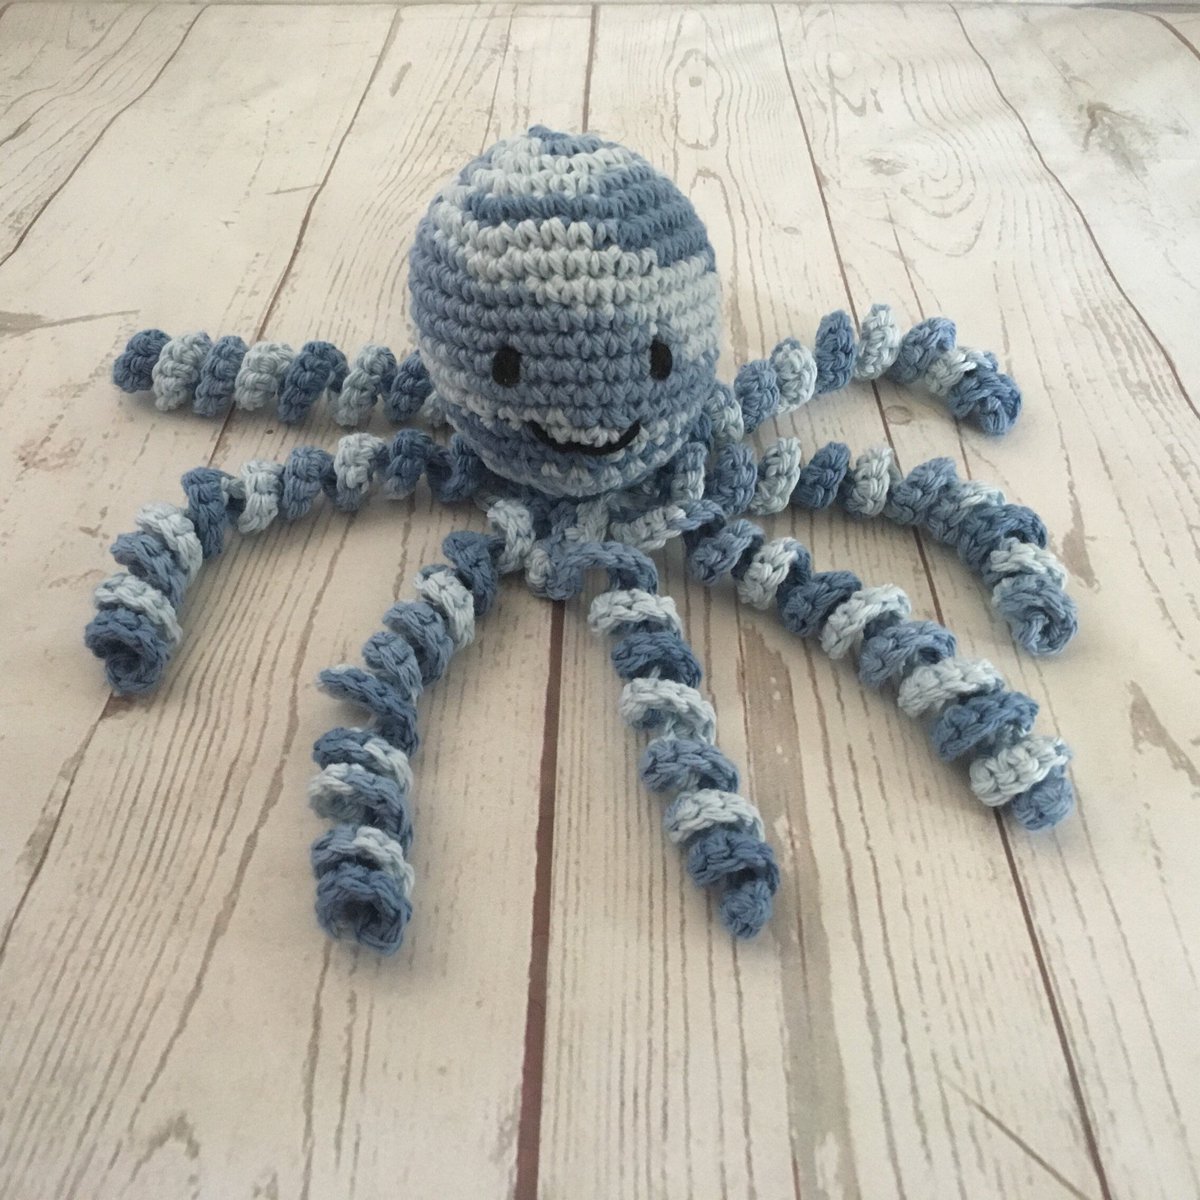 Great gift for babies!
thecrochetshoppeusa.etsy.com/listing/698569…
#thecrochetshoppeus #octopus #crochetoctopus #babygifts #etsyshop #etsyhandmade